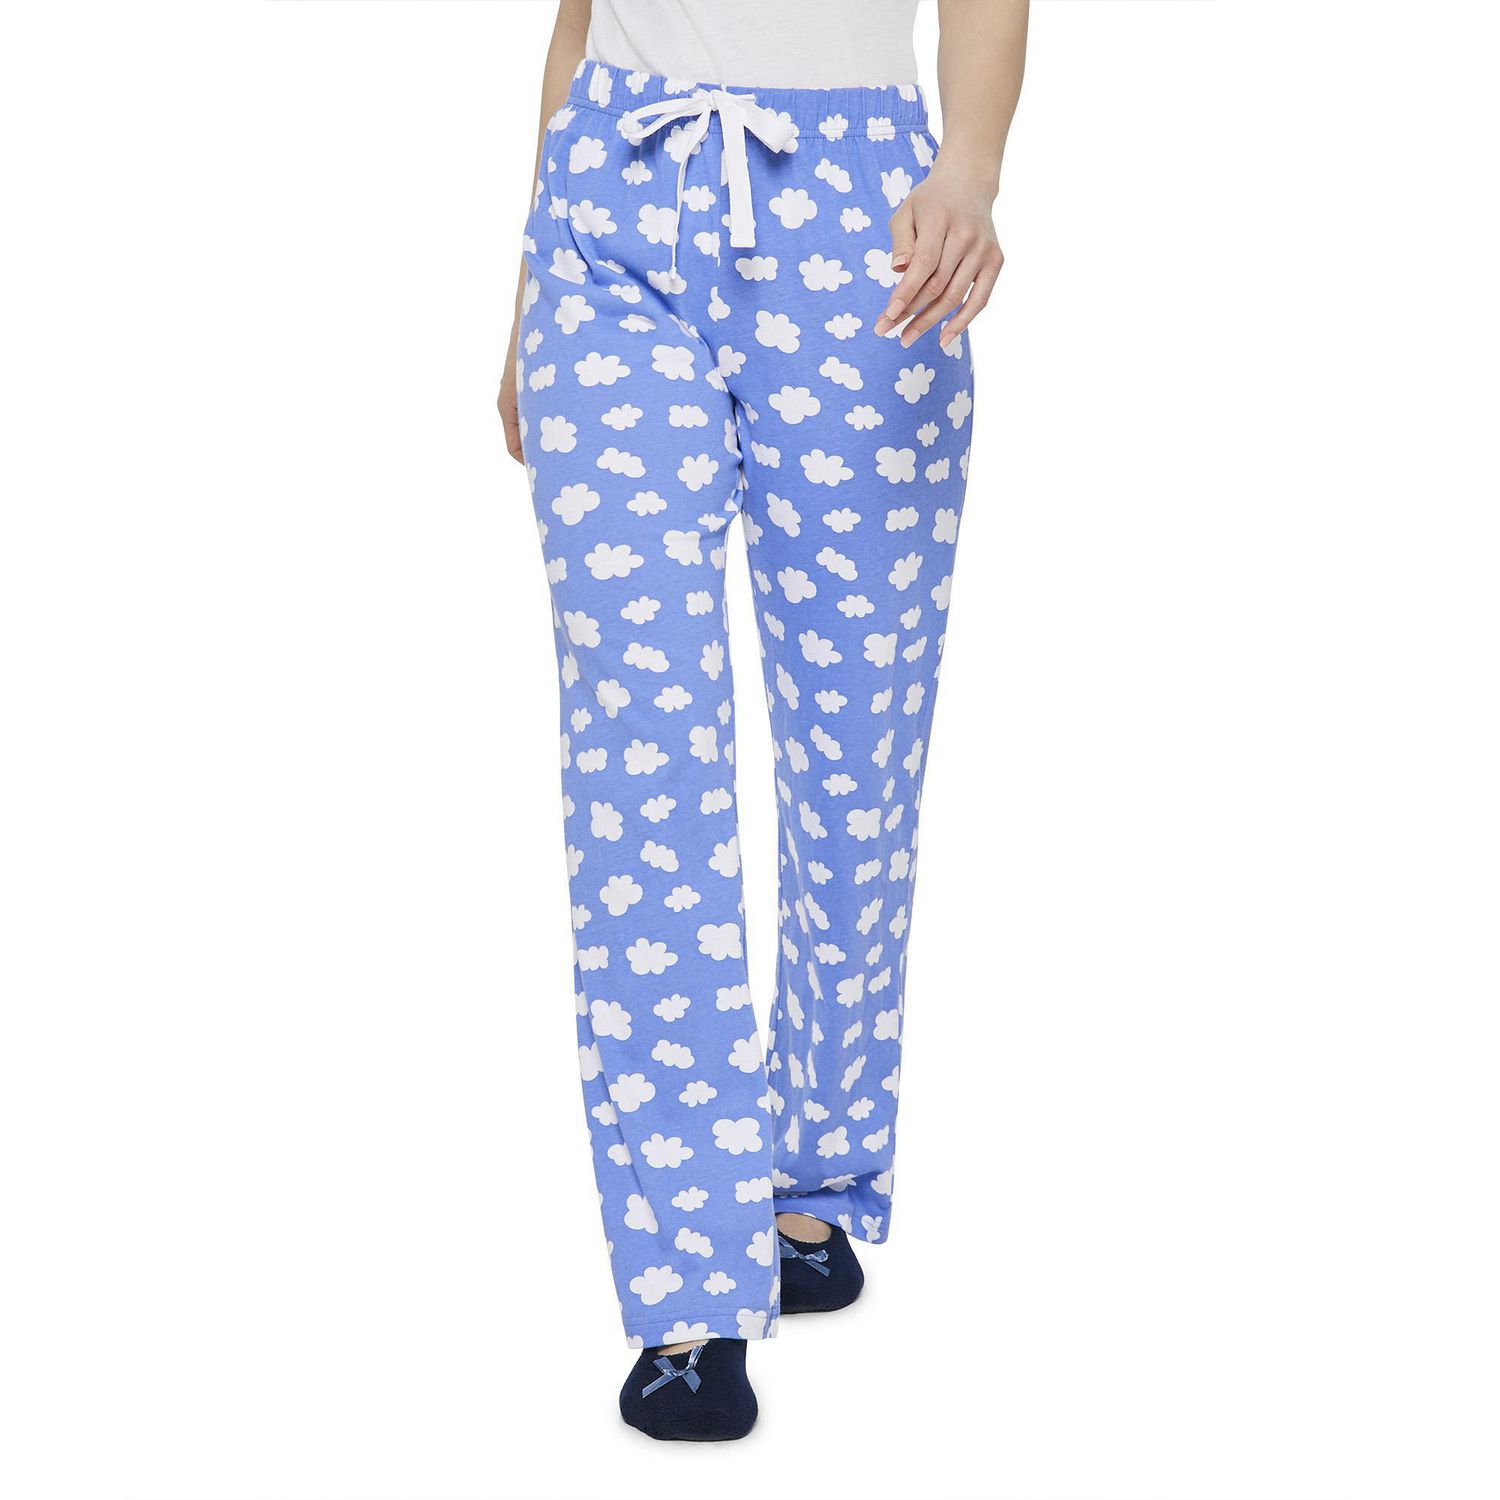 Women's & Men's Pajama Pants from $7.88 on Walmart.com